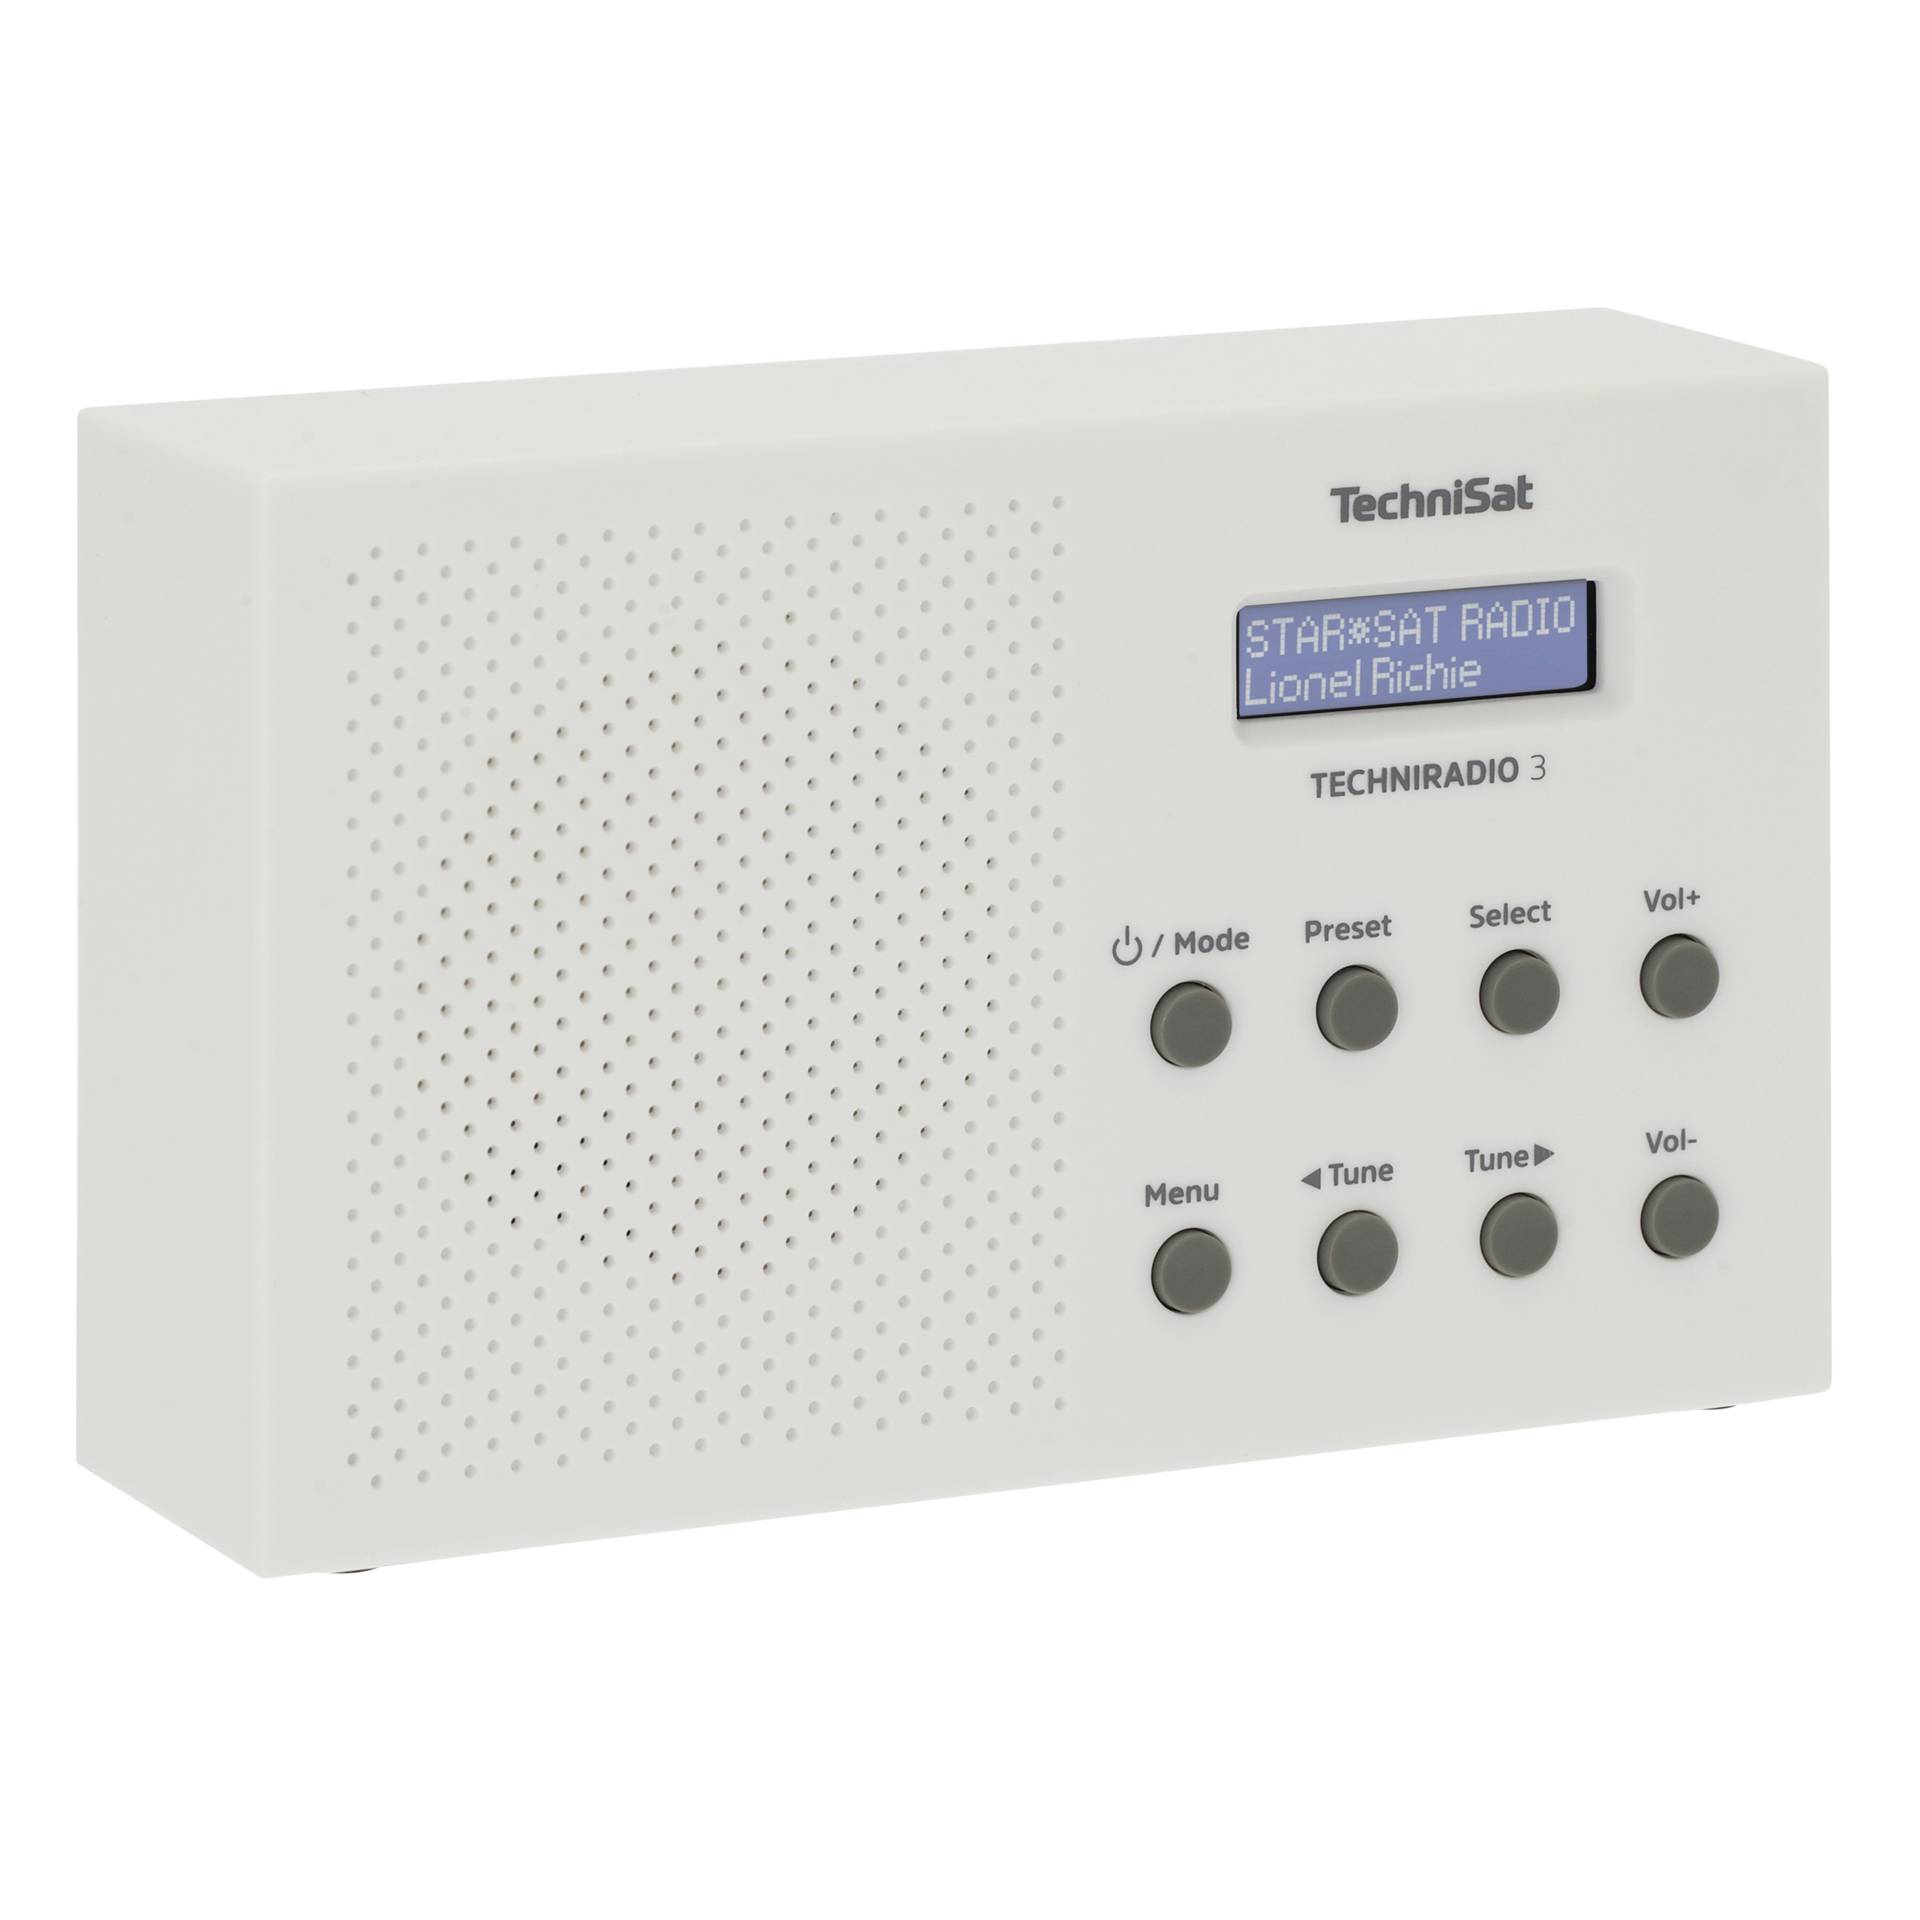 Technisat -TechniSat TechniRadio 3 -Tragbares DAB-Radio -1 Watt -weiß (0001  / 3925) -Technisat Hardware/Electronic